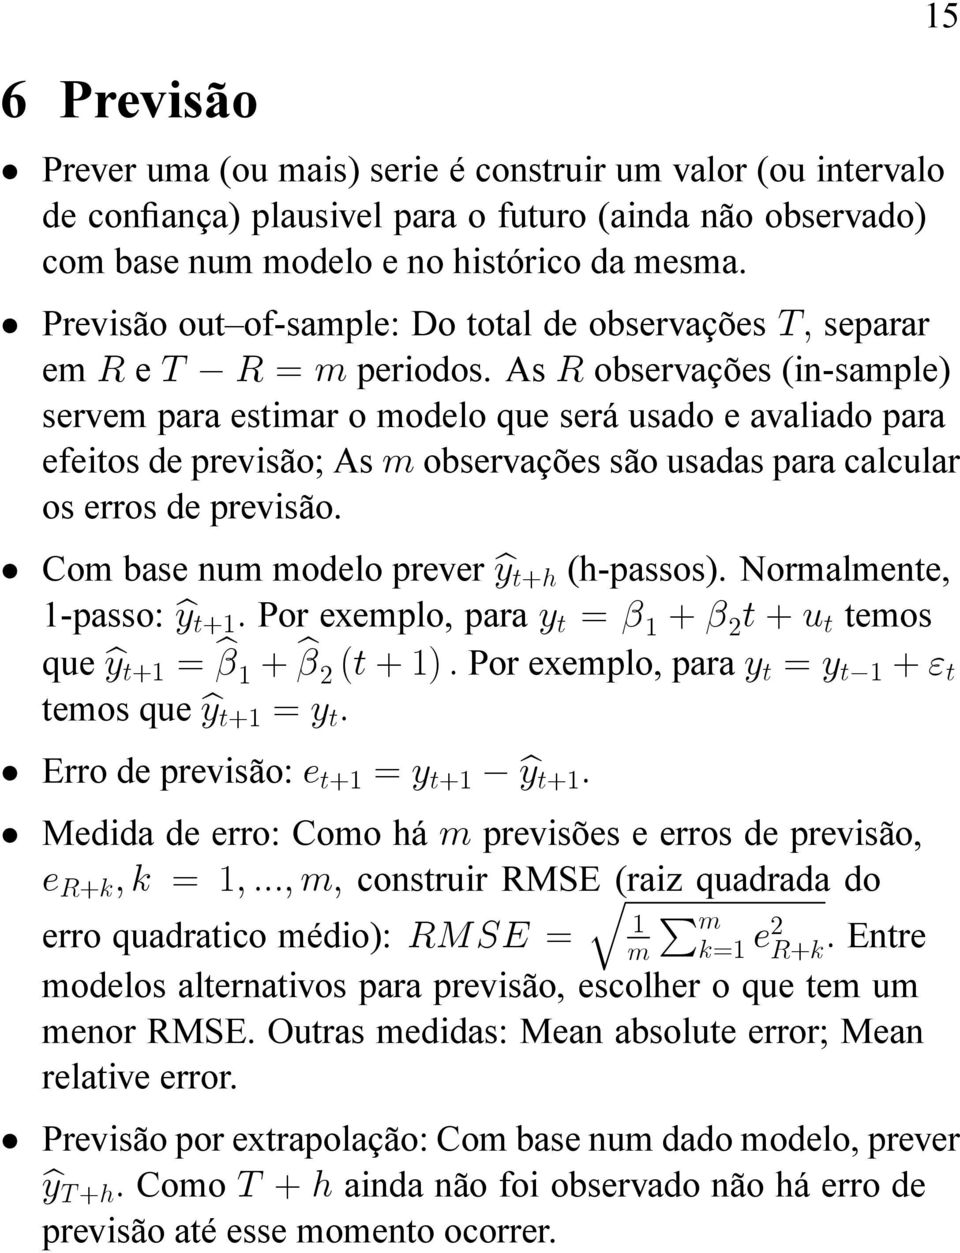 As R observações (in-sample) servem para estimar o modelo que será usado e avaliado para efeitos de previsão; As m observações são usadas para calcular os erros de previsão.